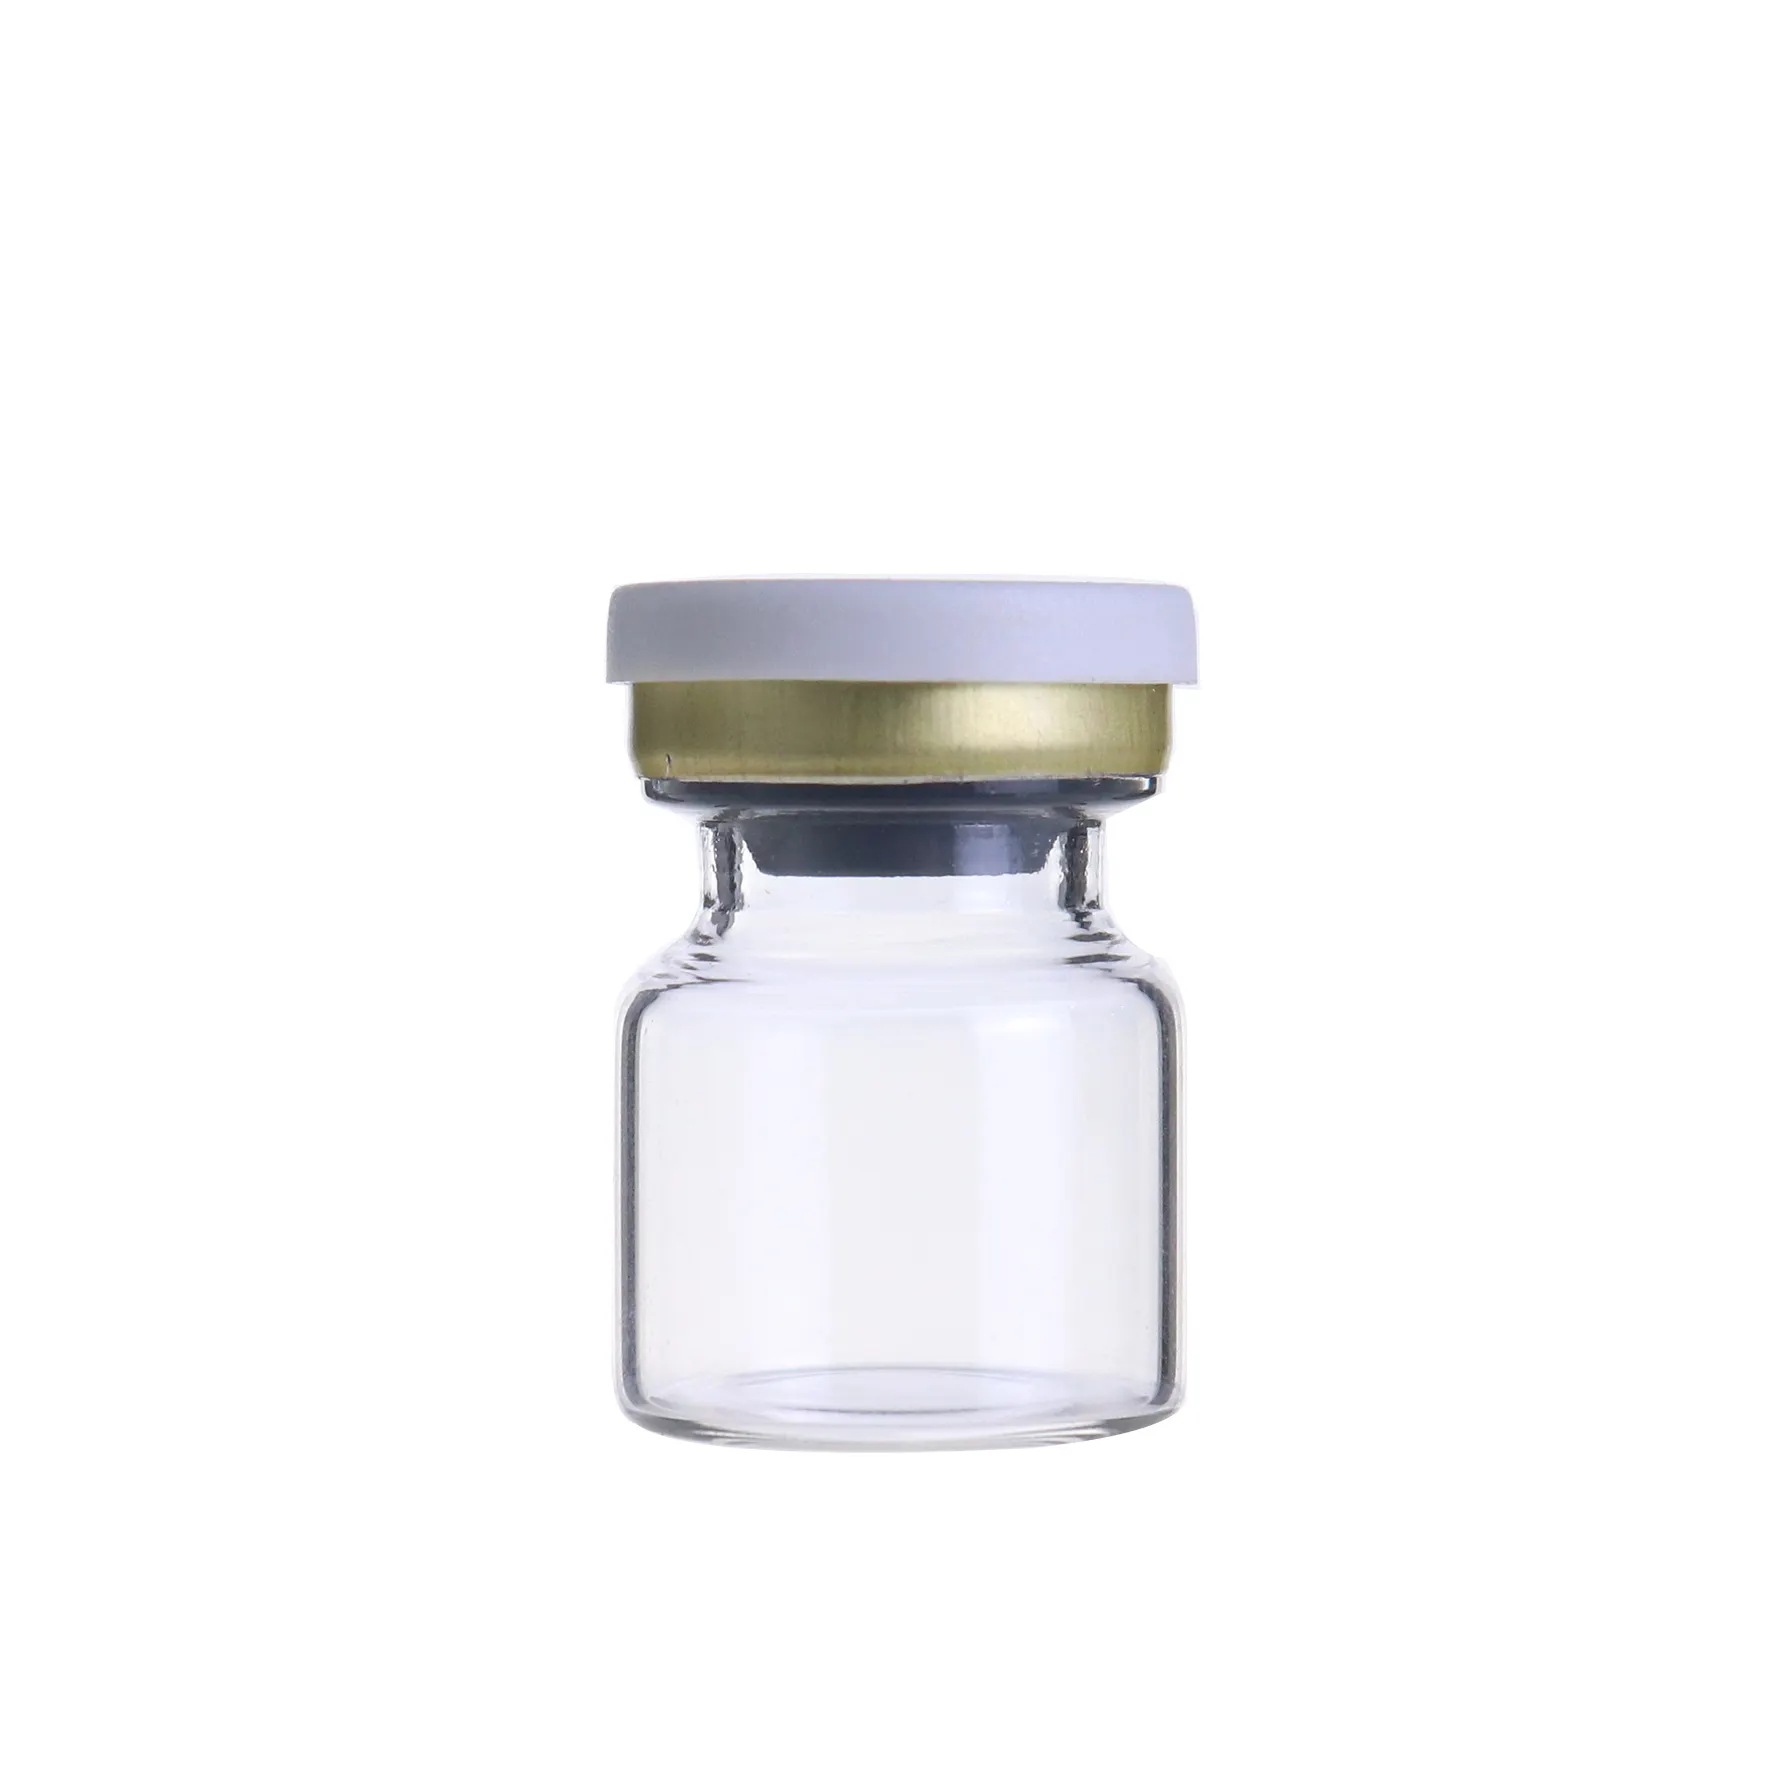 Rendah MOQ Amber Clear Obat Apotek Botol Kaca Injeksi 2Ml 3 Ml Homeopati Botol dengan Tutup Botol